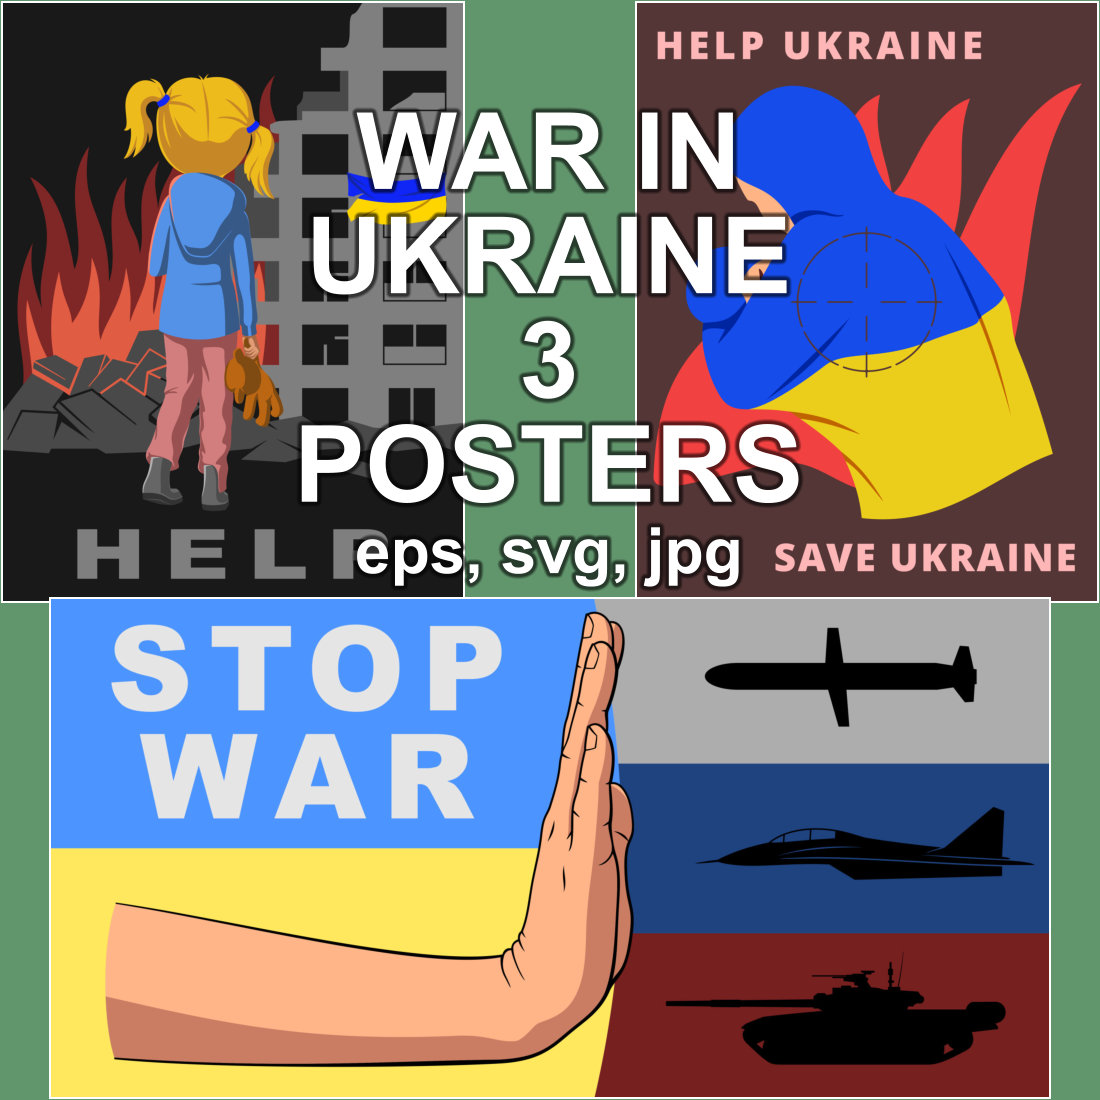 Save, Help Ukraine, Stop War Posters.